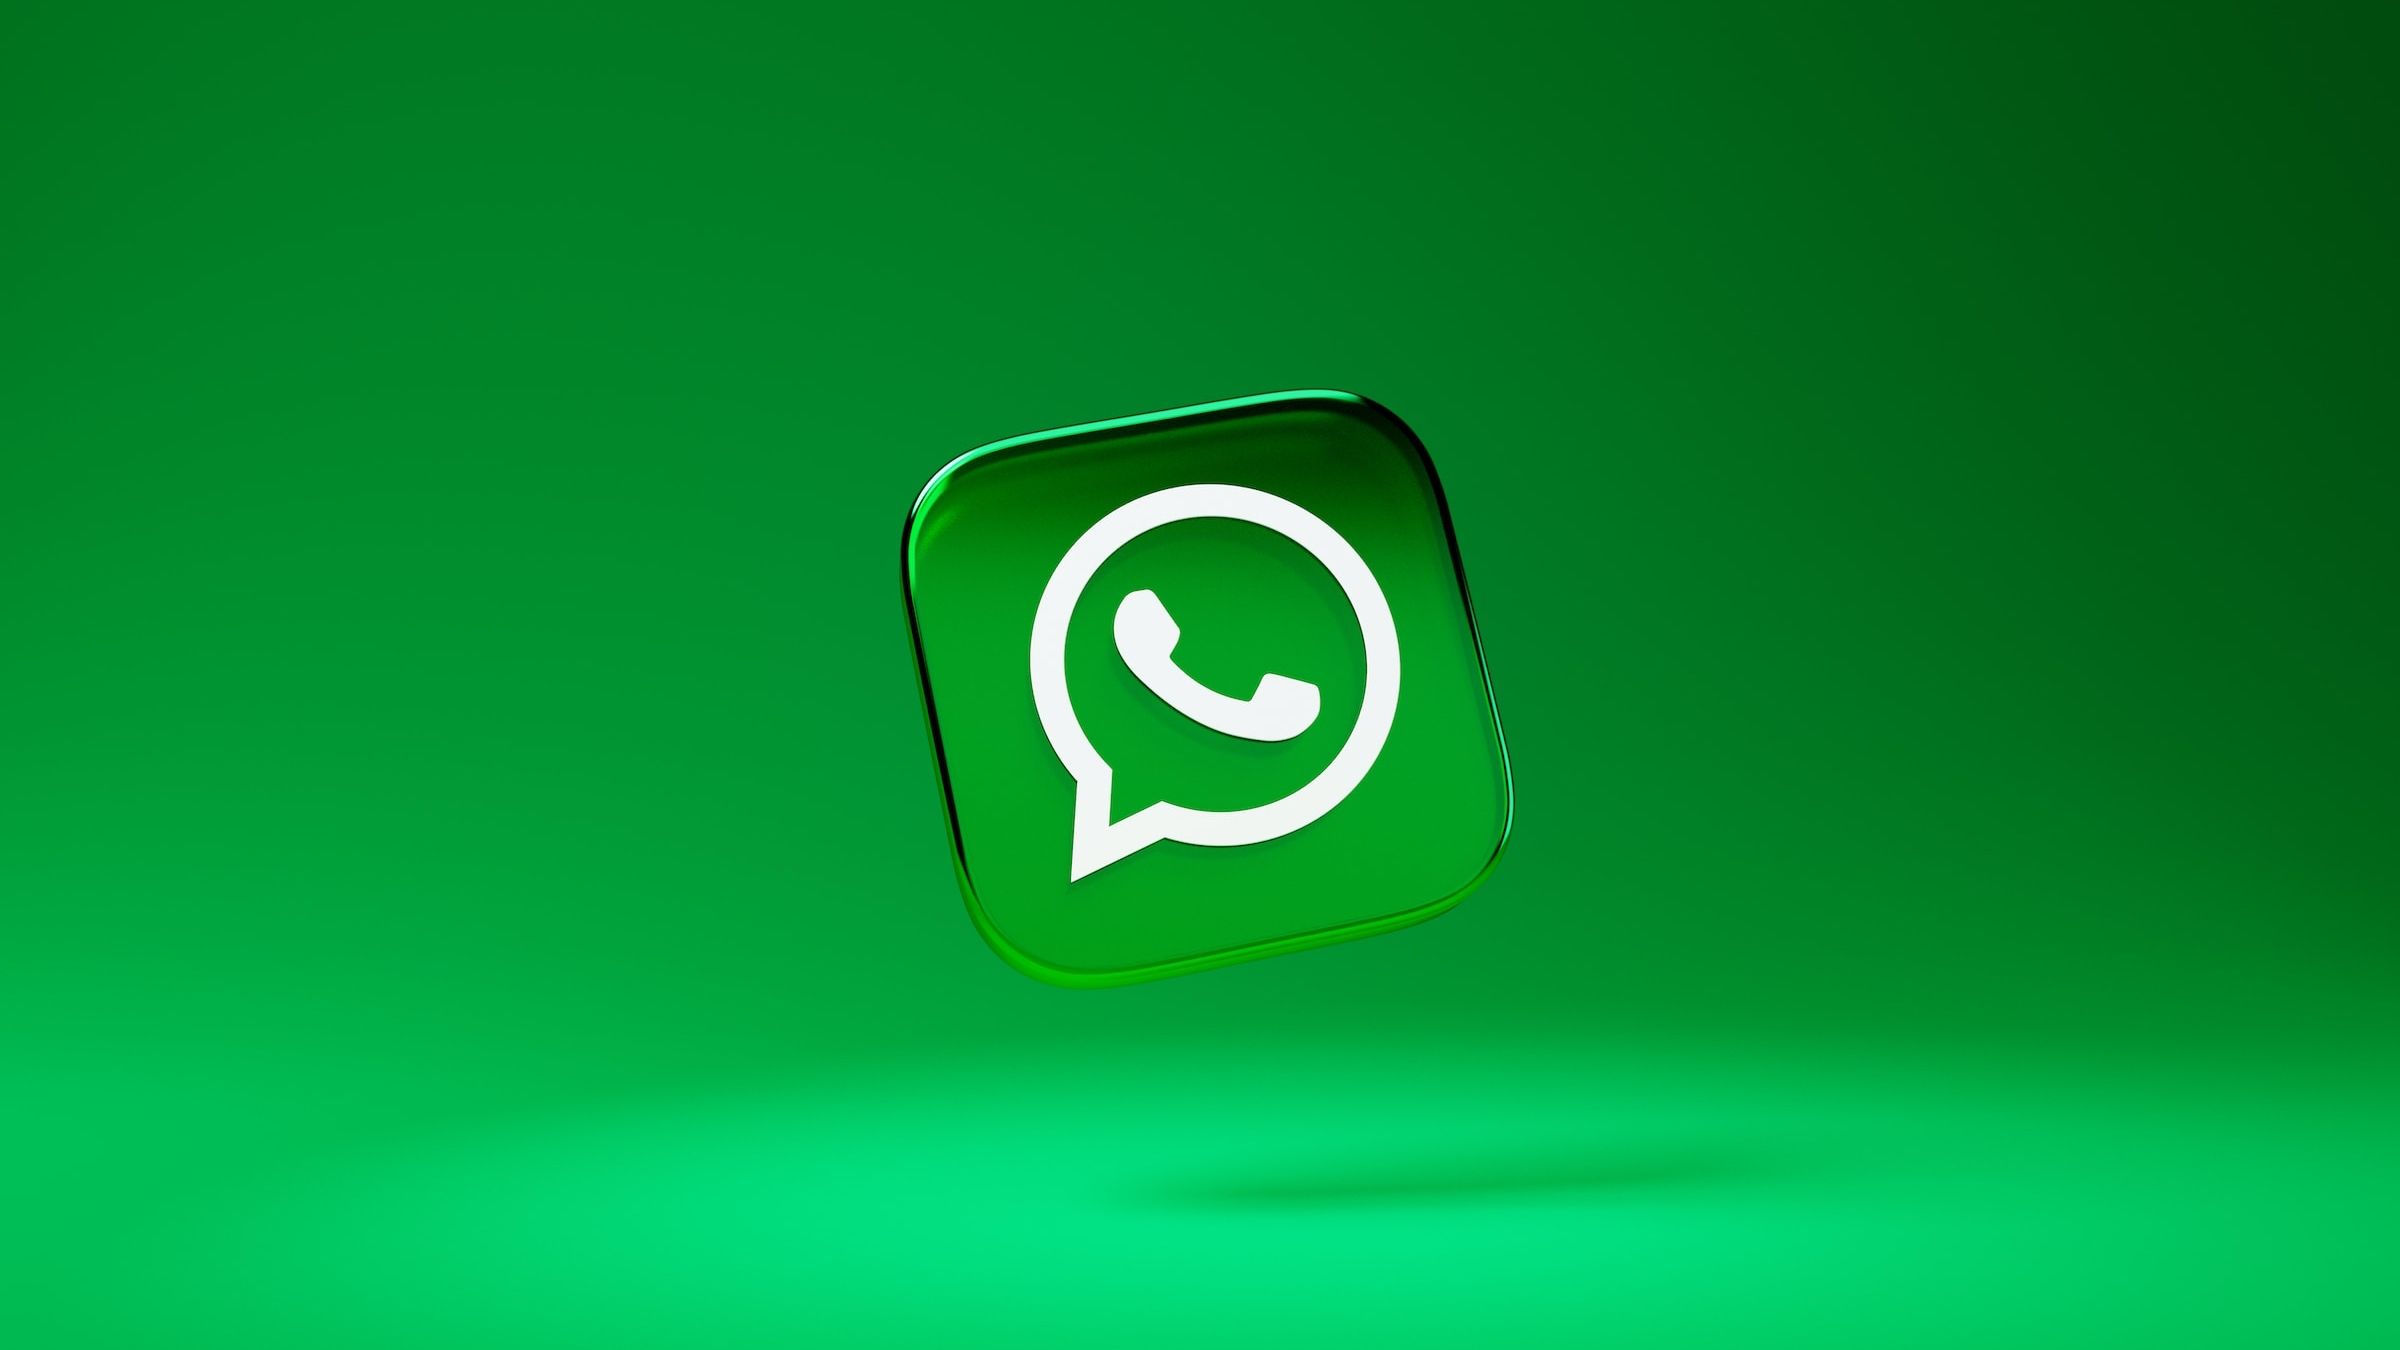 Logotipo do WhatsApp com fundo verde